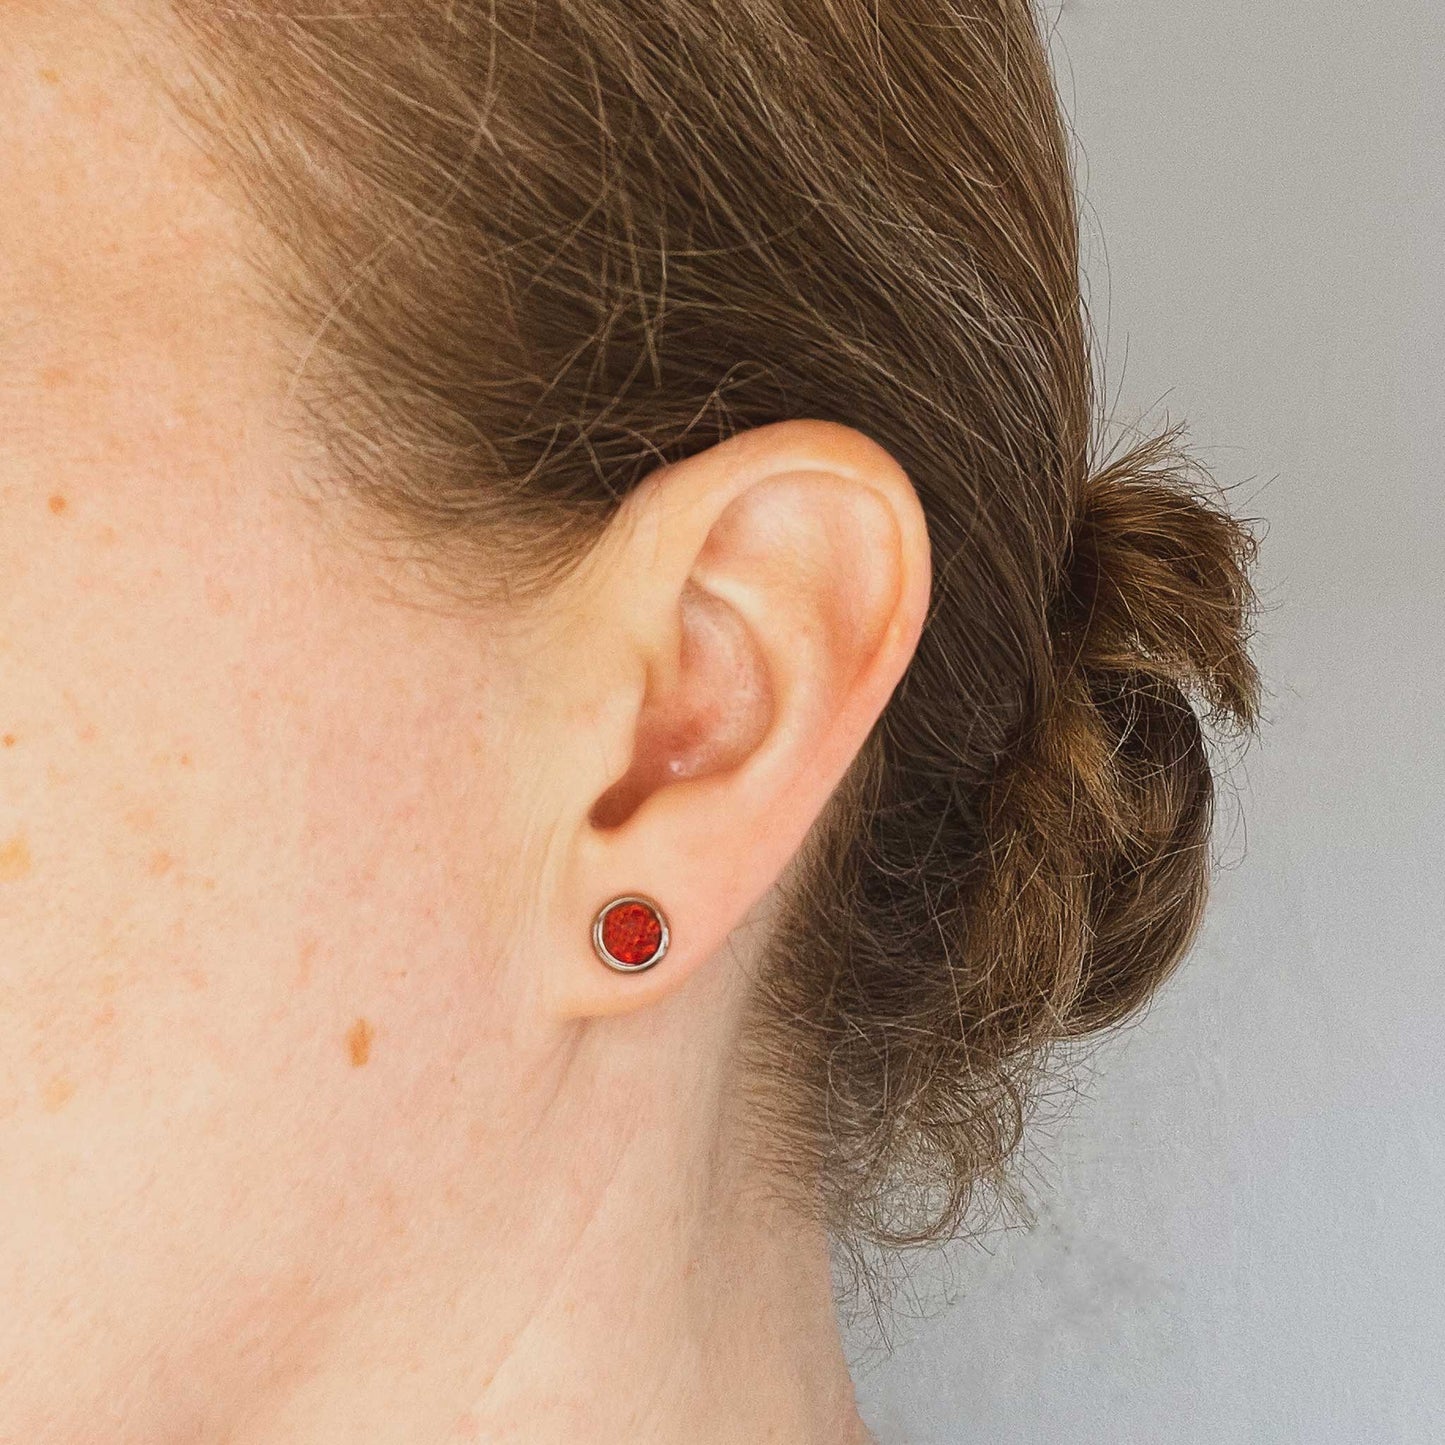 Woman wearing red Opal stud earring in earlobe